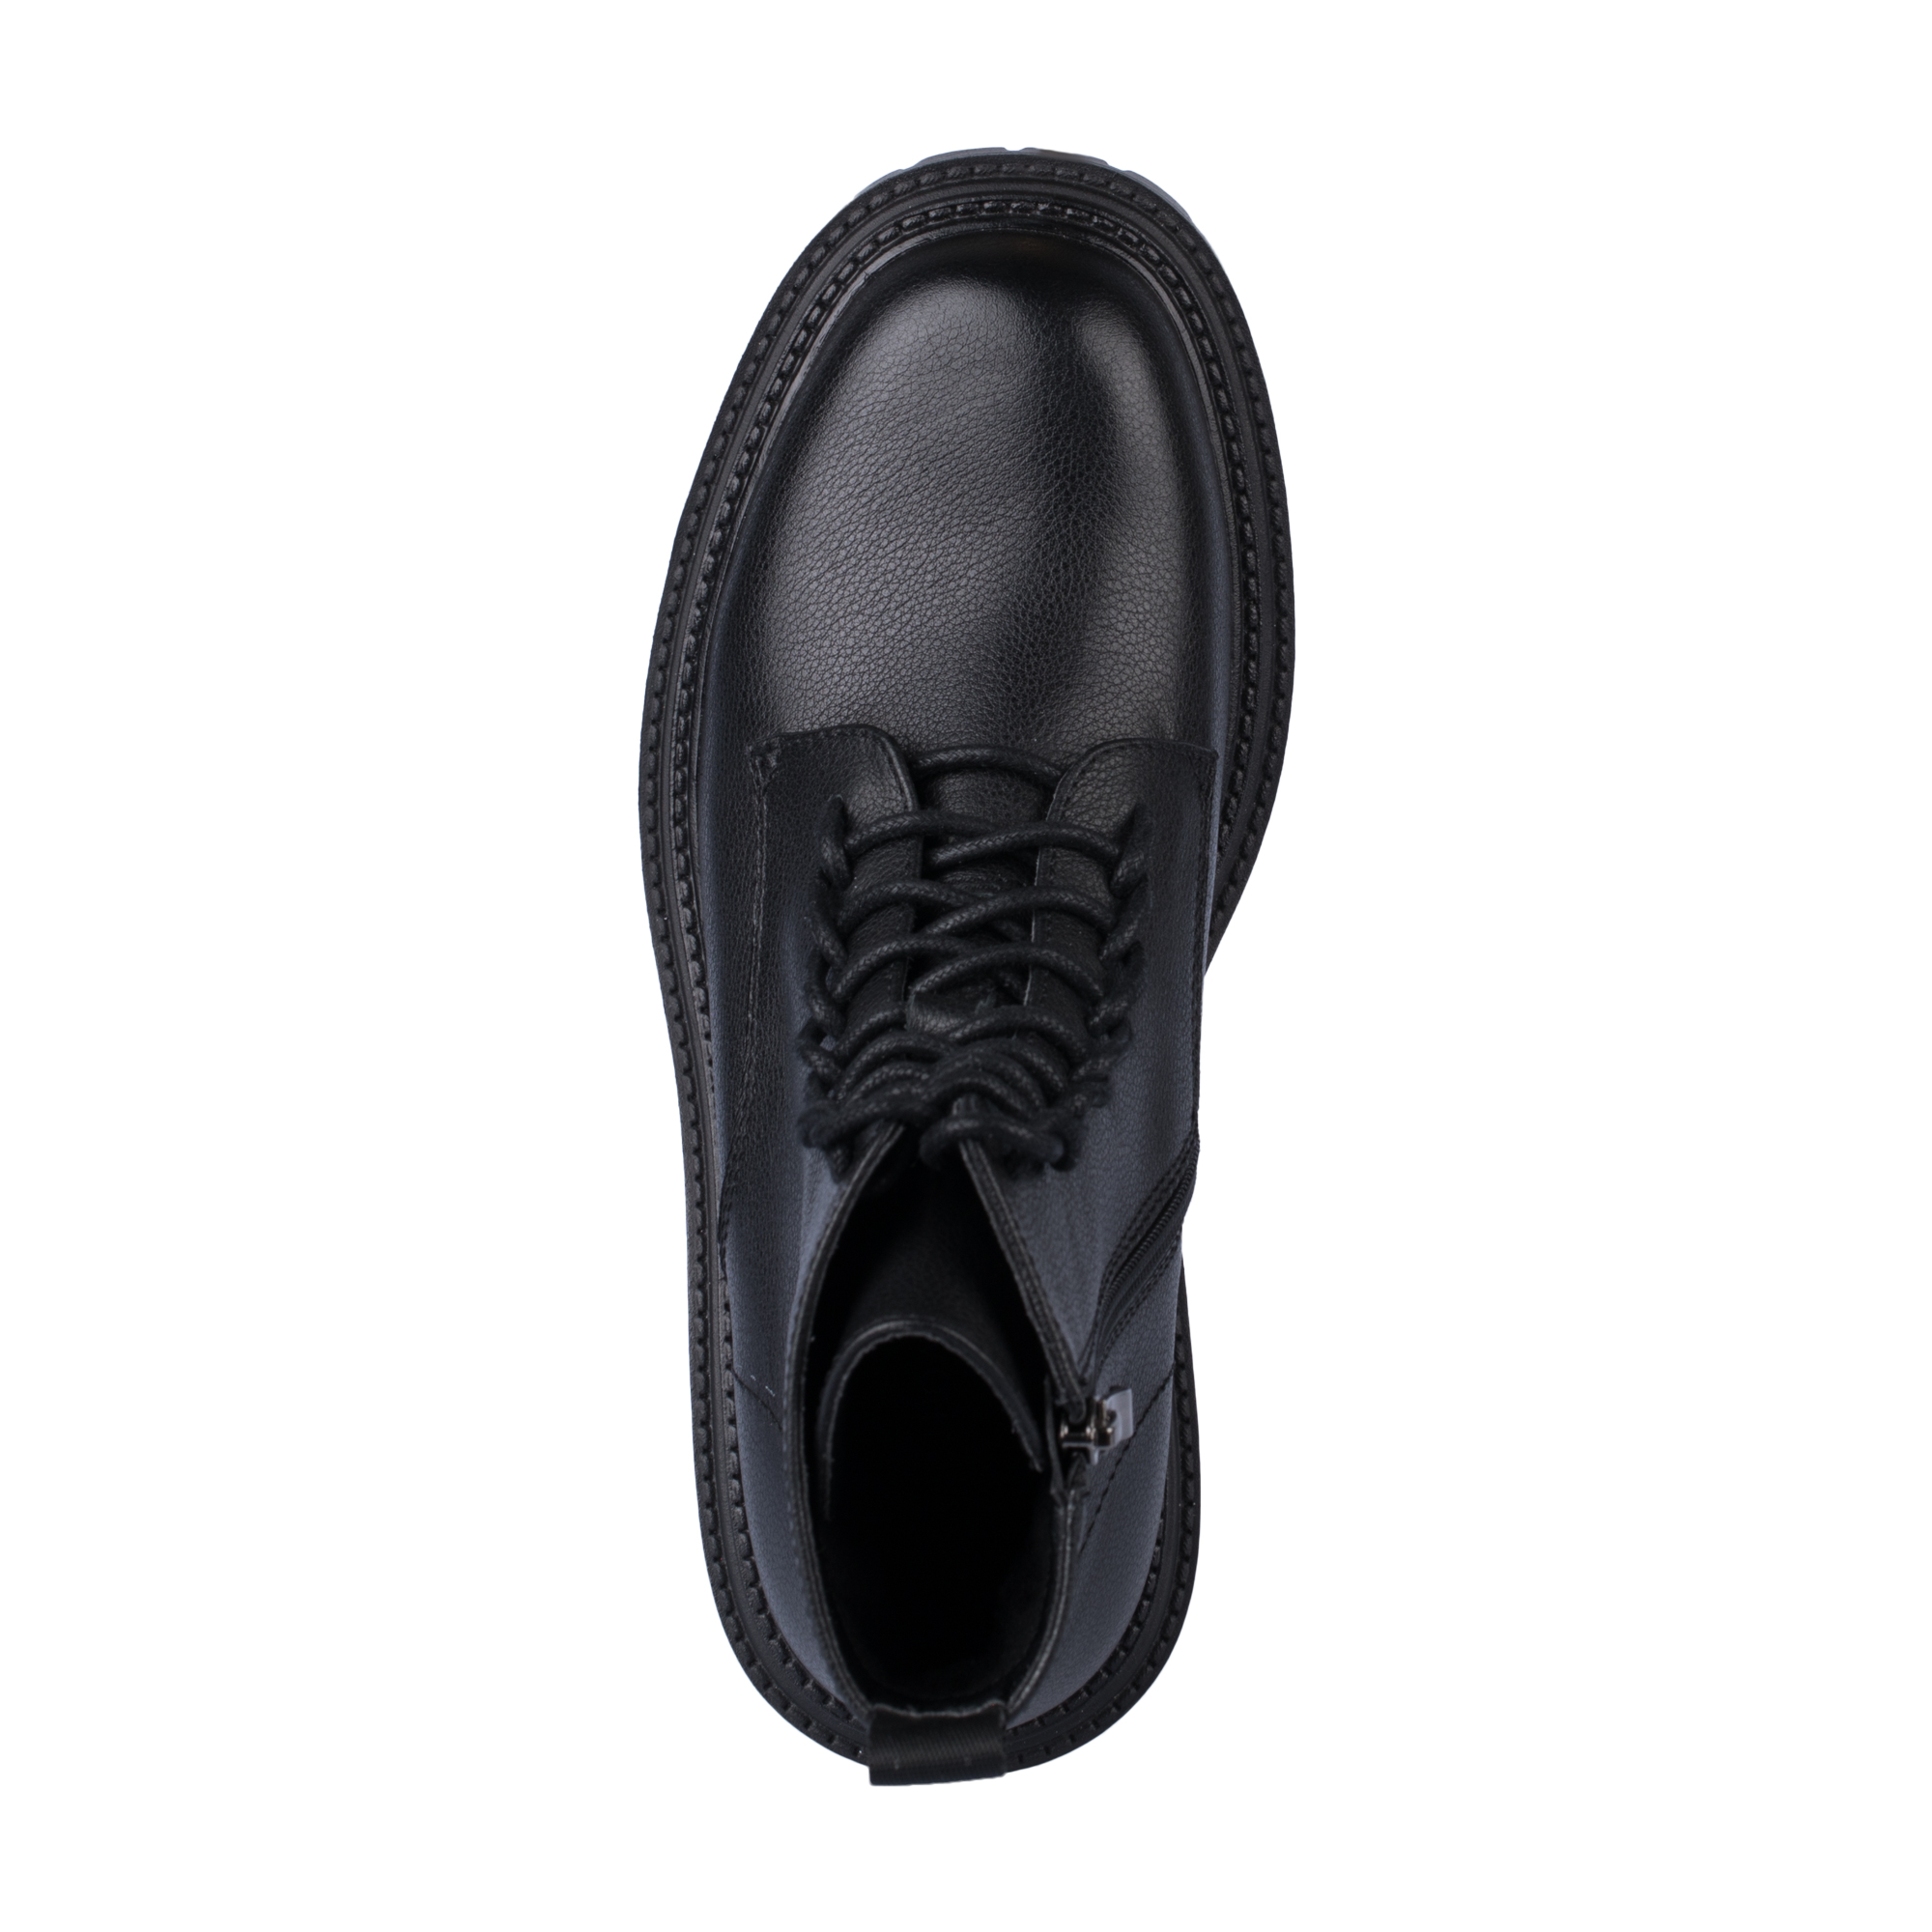 Ботинки Thomas Munz 233-958A-5102, цвет черный, размер 38 - фото 5